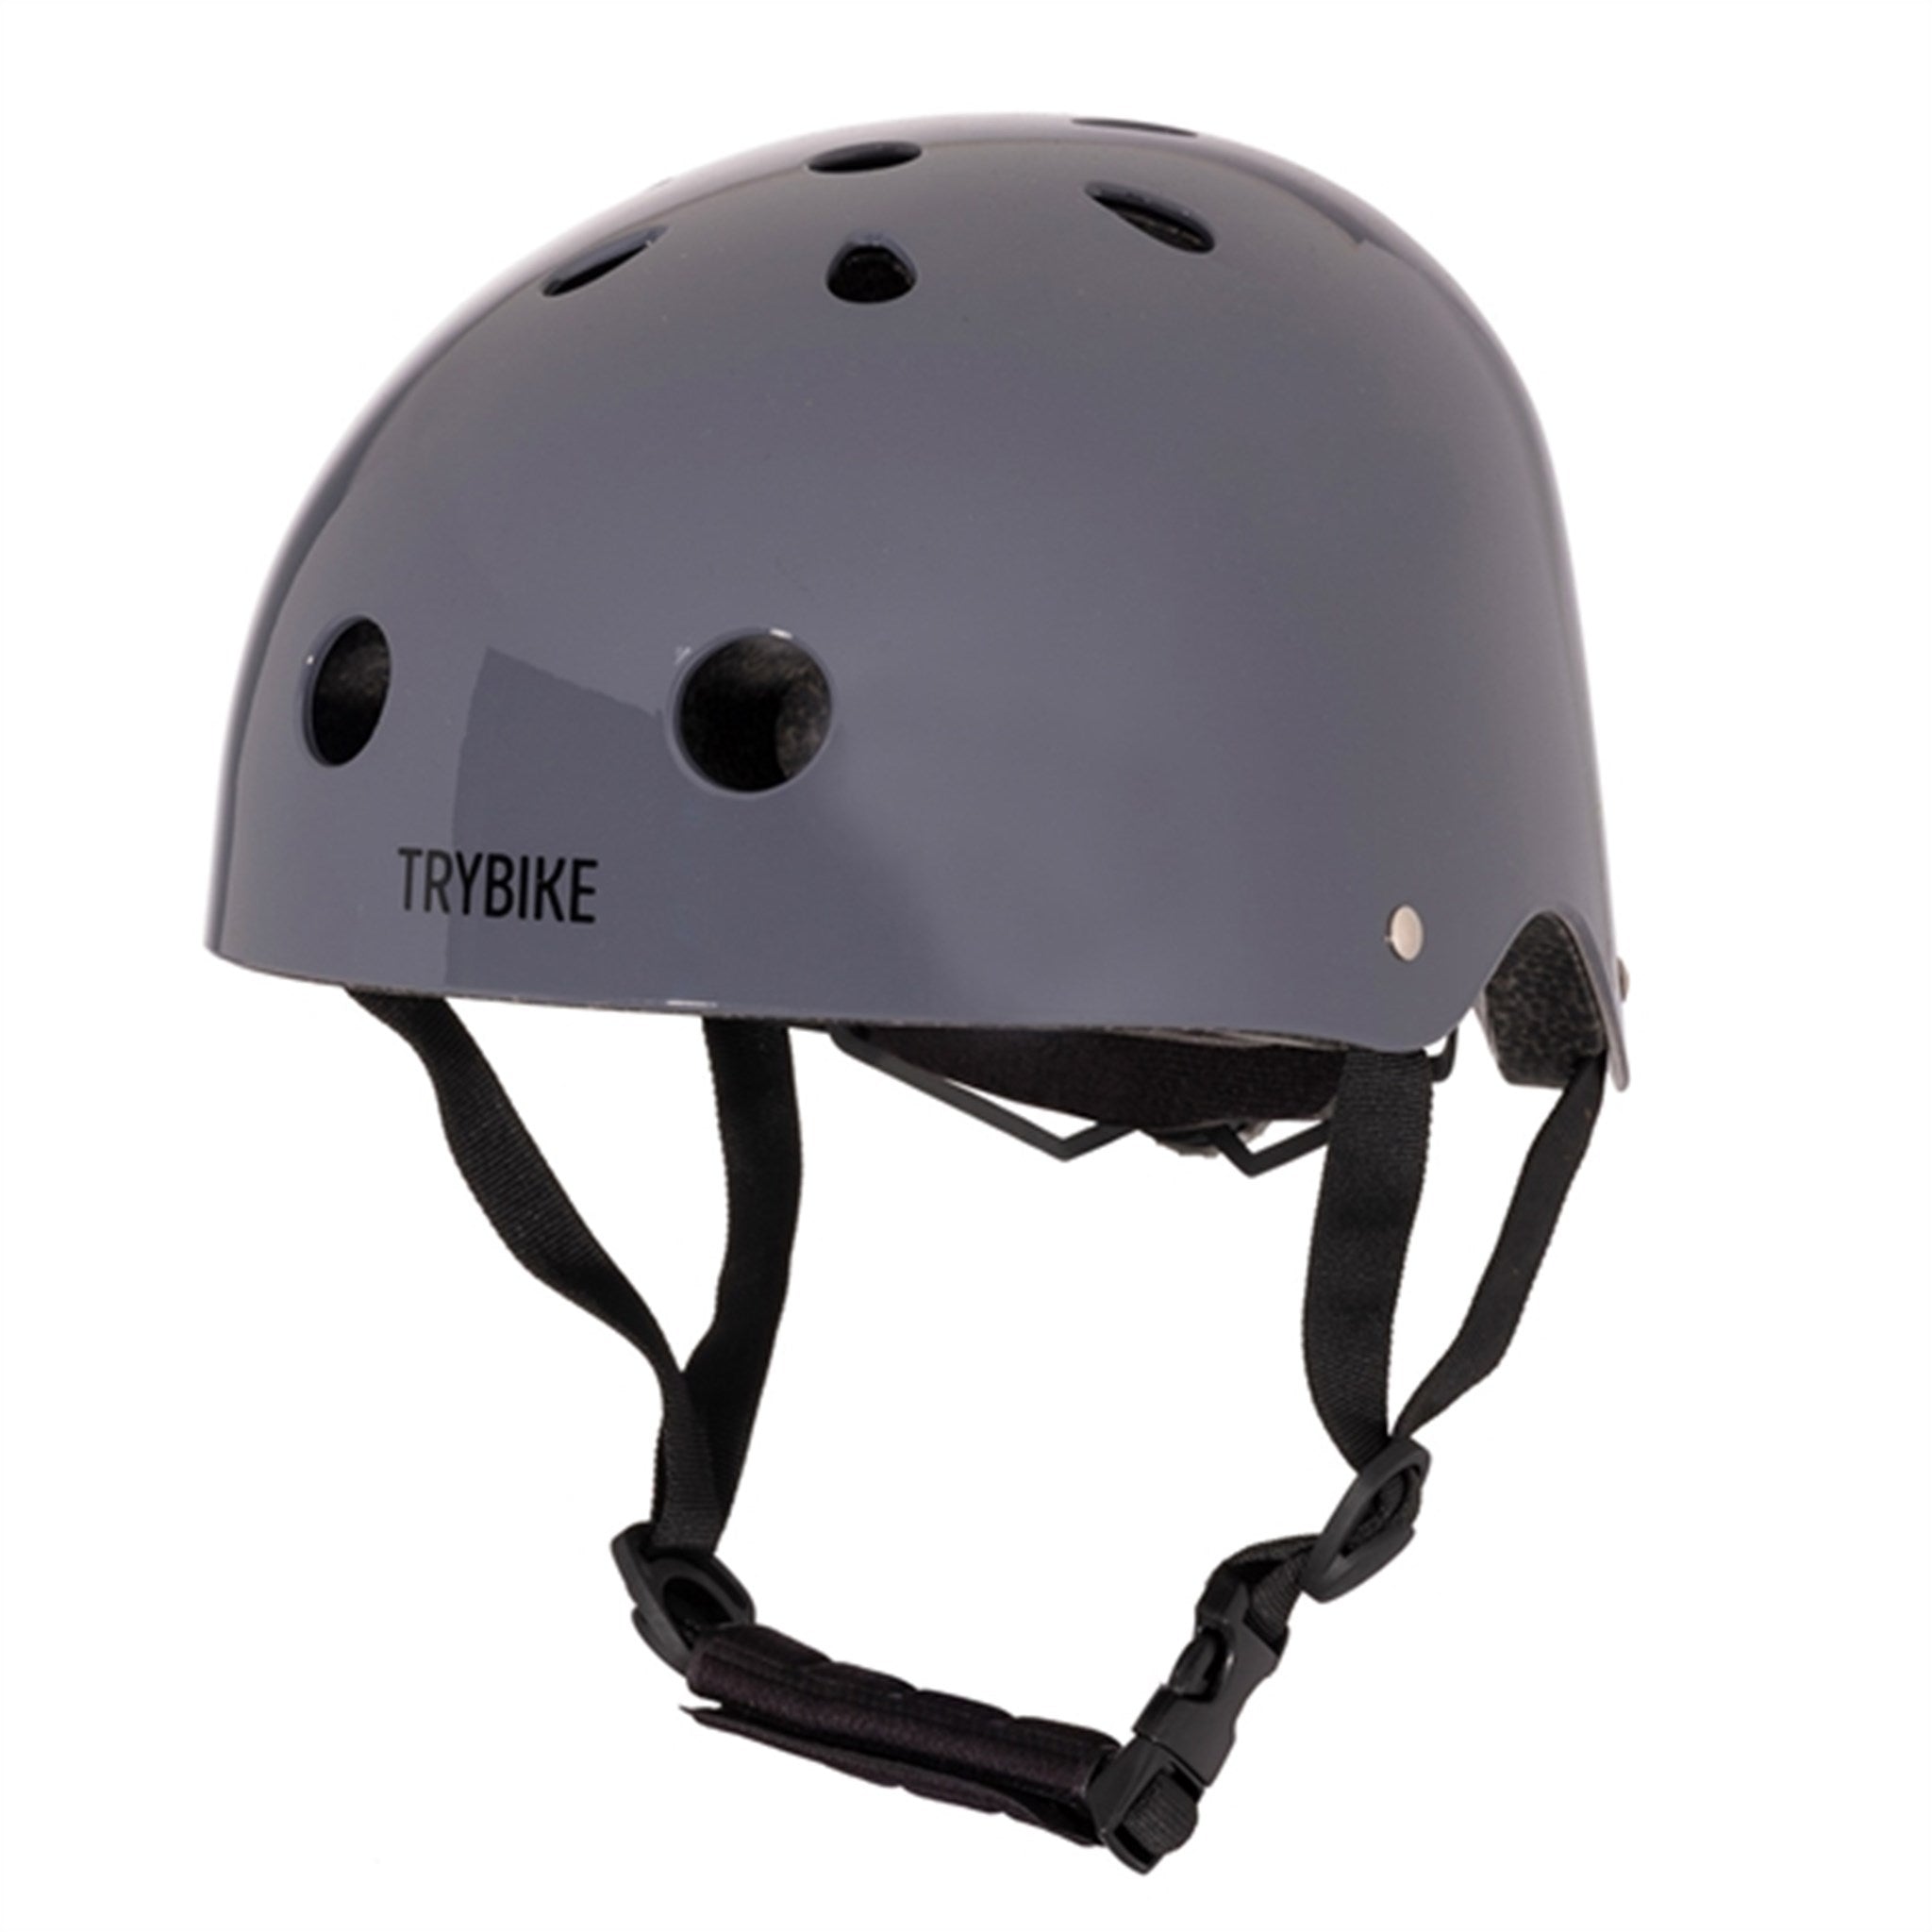 Trybike CoConut Graphite Grey Helmet Retro Look